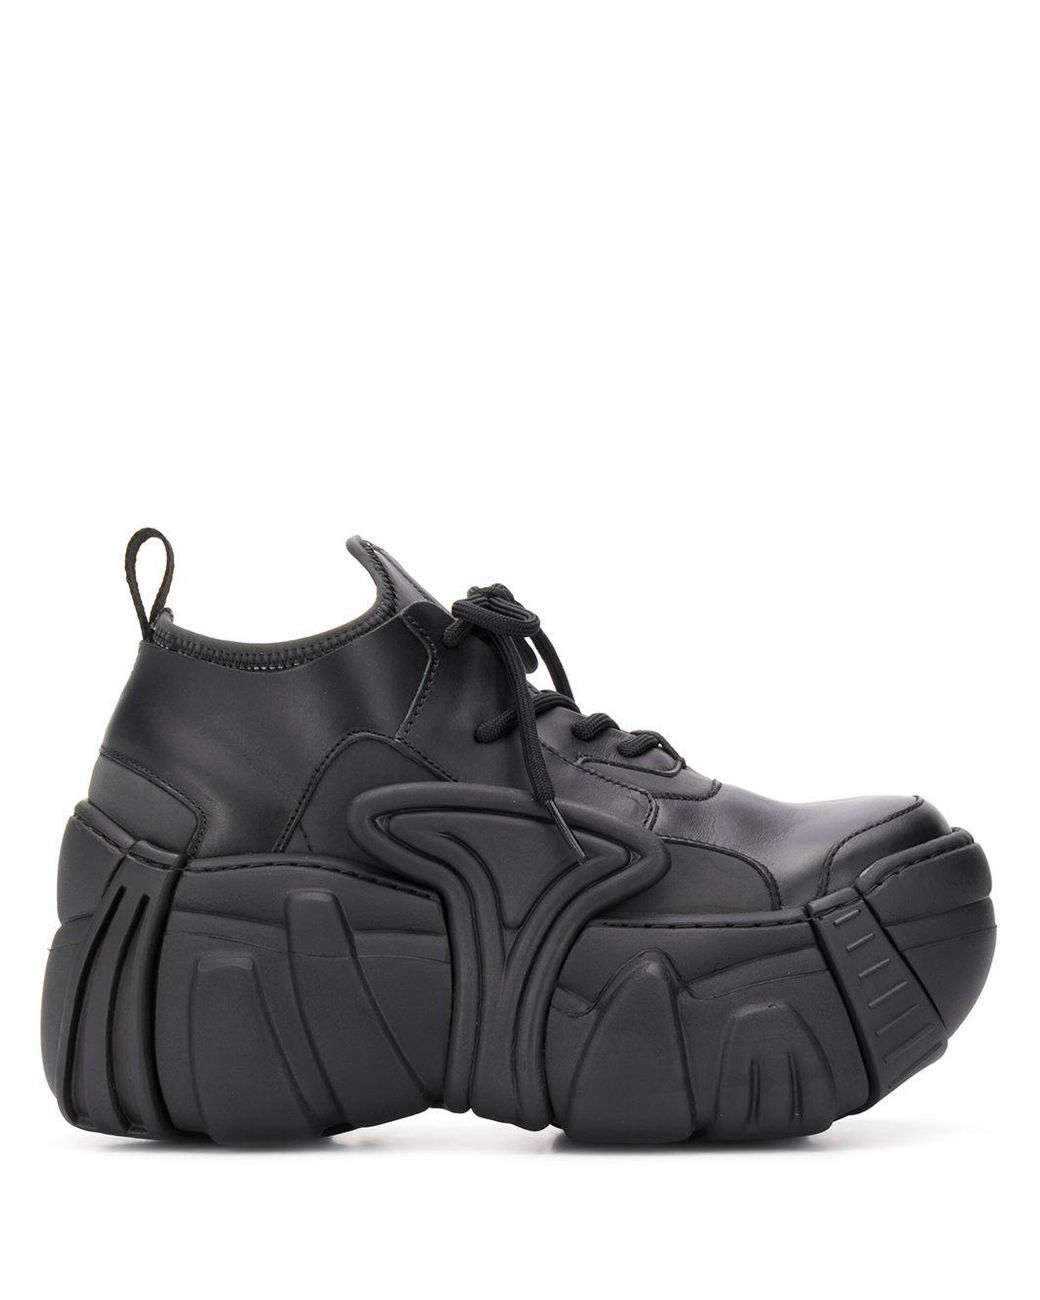 Swear Element Sneakers in Black - Lyst